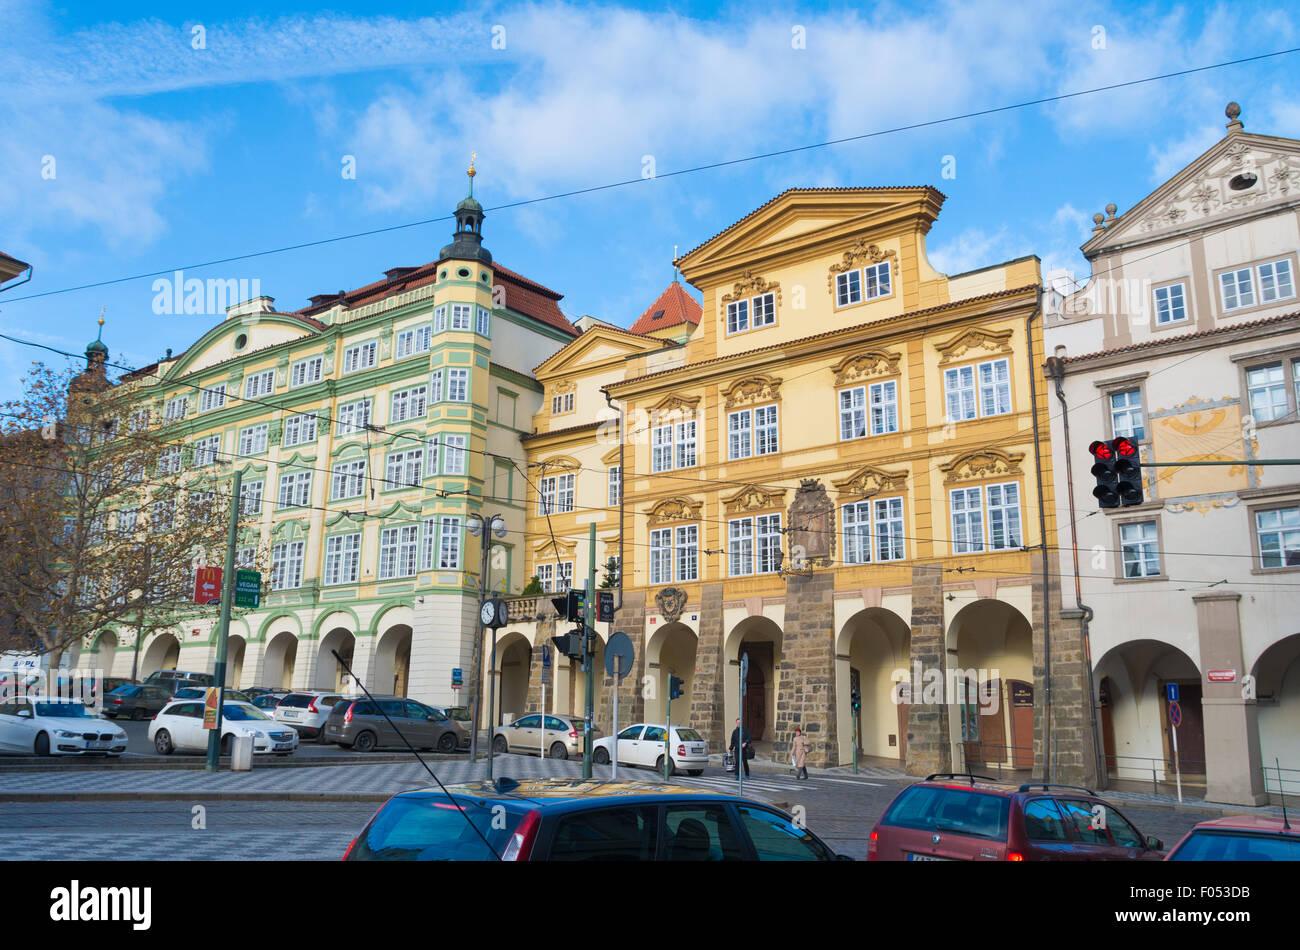 Típico de las fachadas de las casas en la parte inferior del centro de la ciudad. Praga es considerada como una de las más bellas c Foto de stock